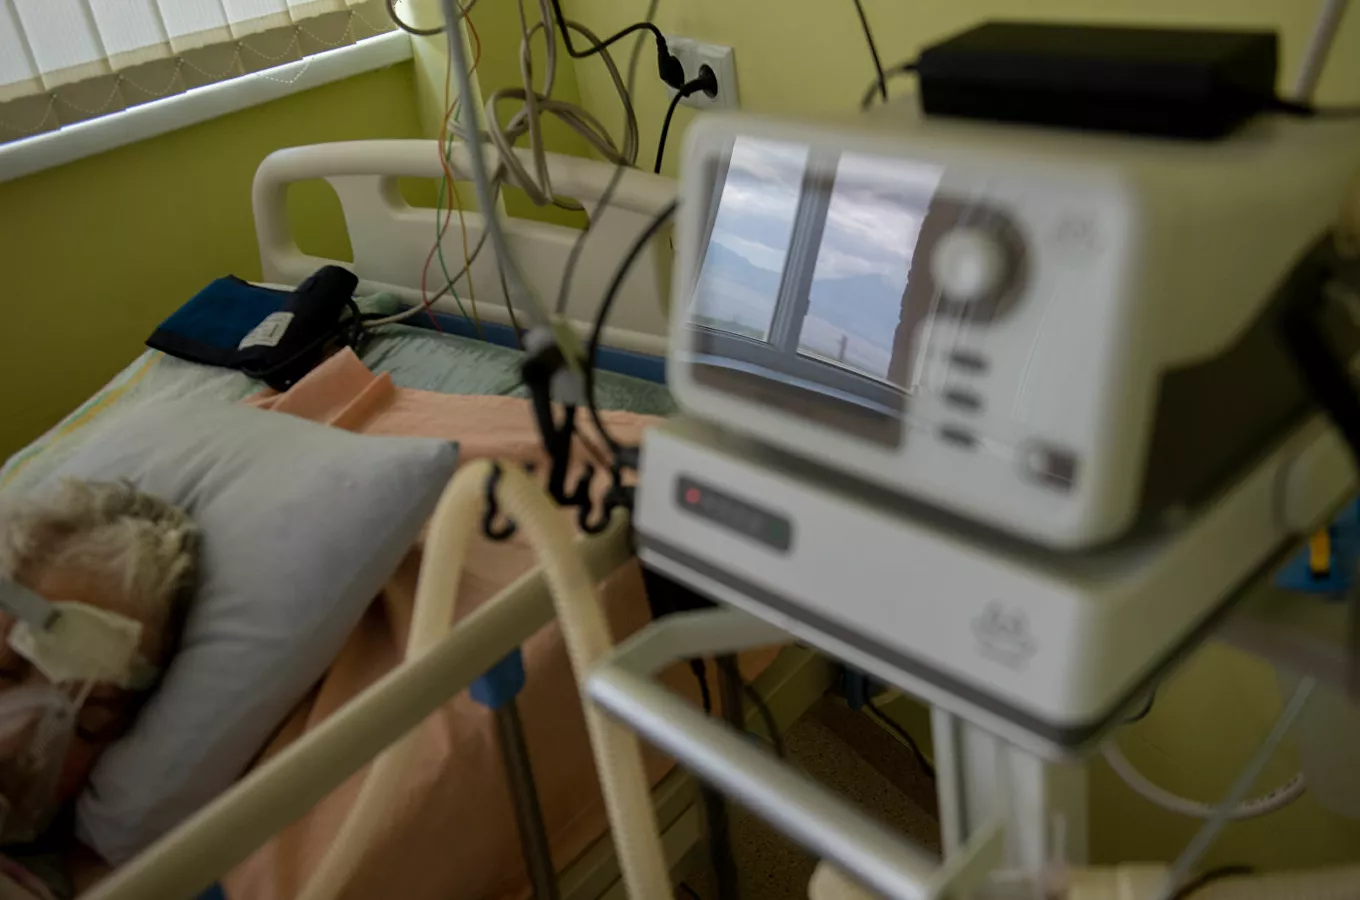 2603 նոր դեպք, 32 մահ` մեկ օրում. կորոնավիրուսային հիվանդության ընթացքը Հայաստանում